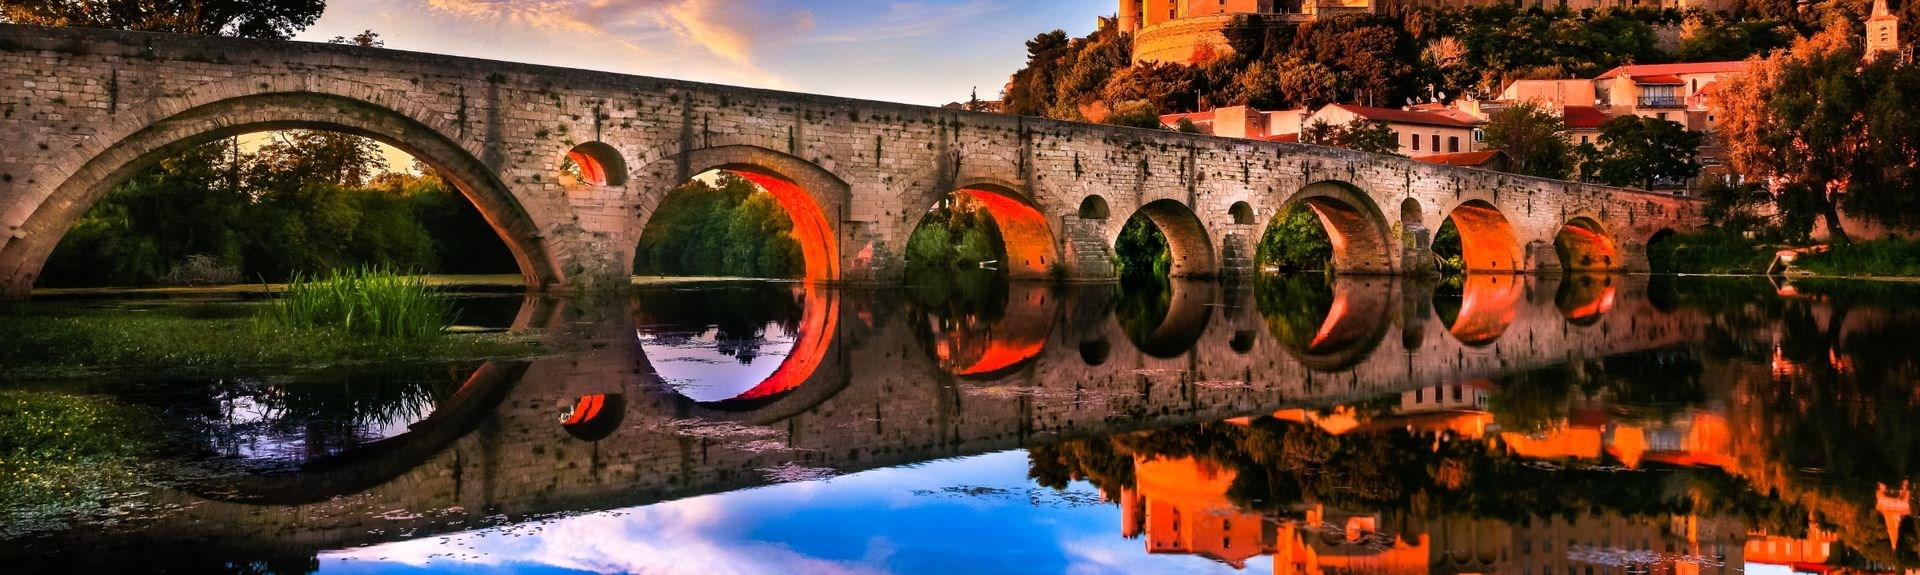 Ciudad de Béziers puente medieval